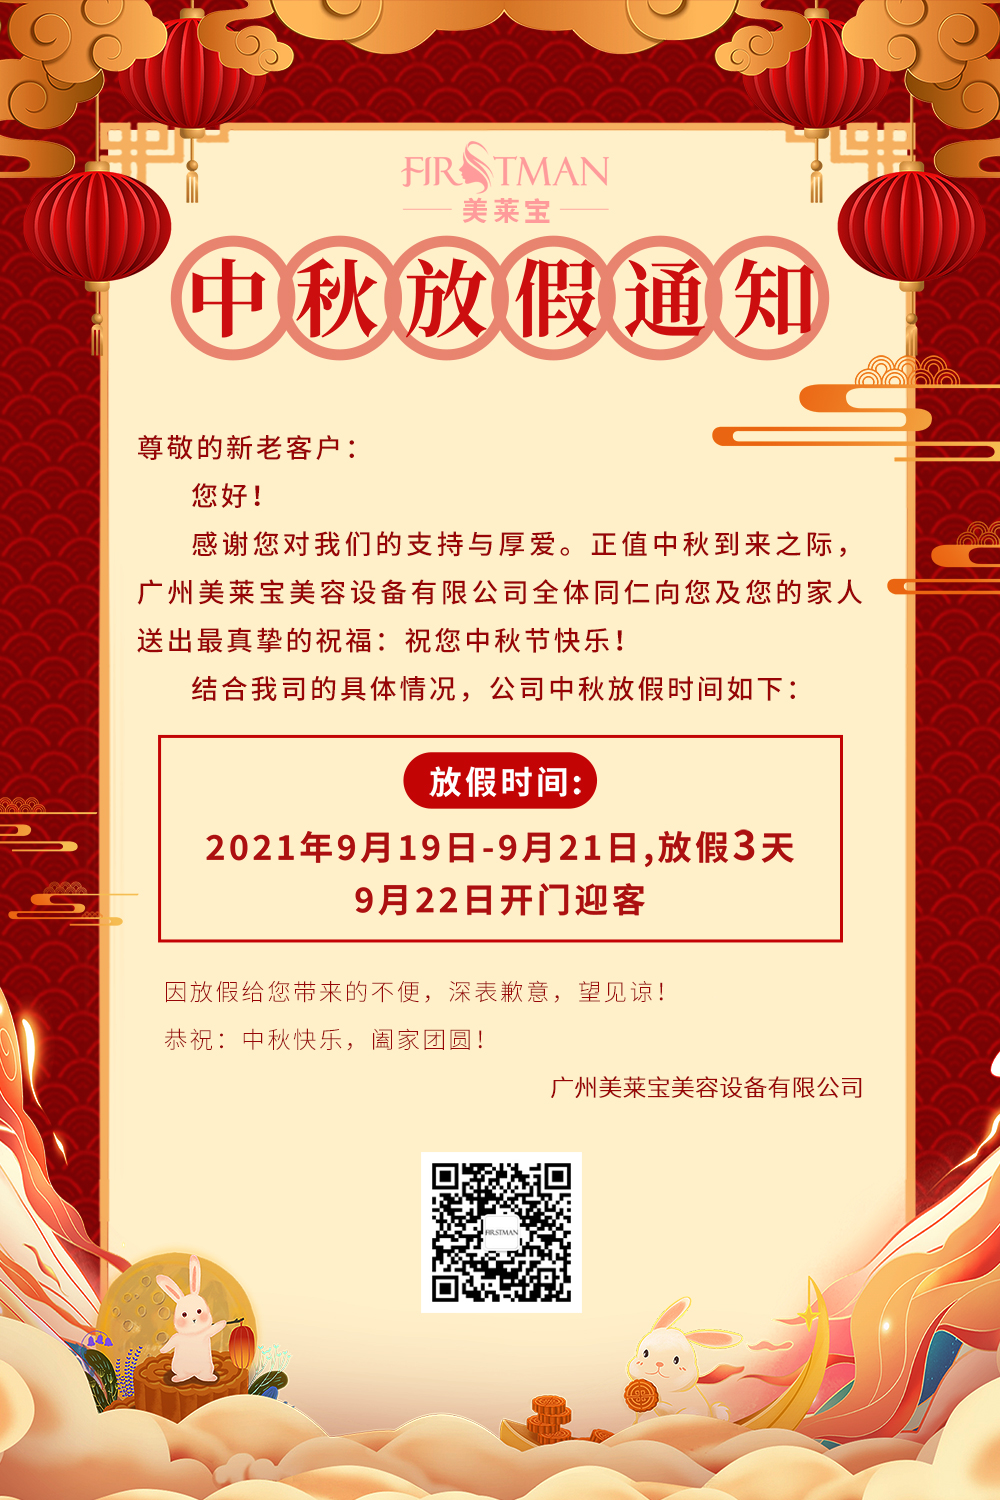 关于广州美莱宝美容设备有限公司2021年中秋佳节放假通知